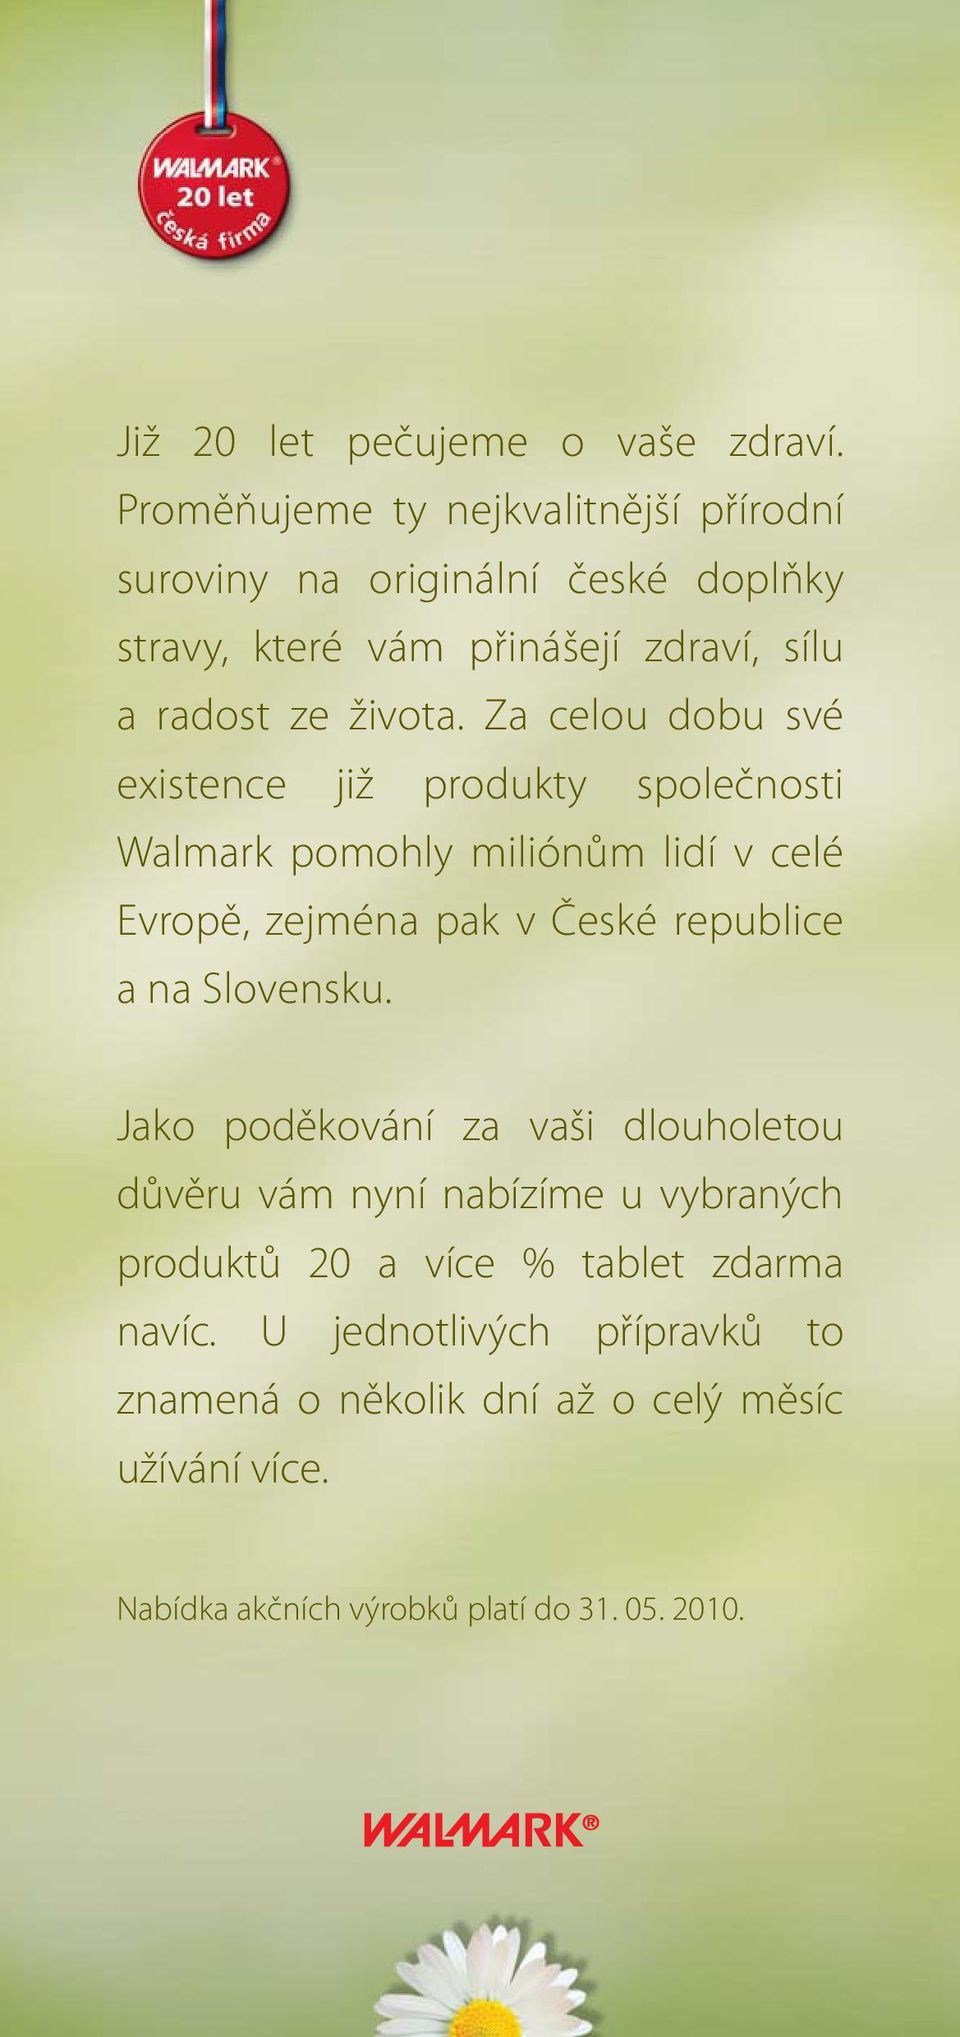 Za celou dobu své existence již produkty společnosti Walmark pomohly miliónům lidí v celé Evropě, zejména pak v České republice a na